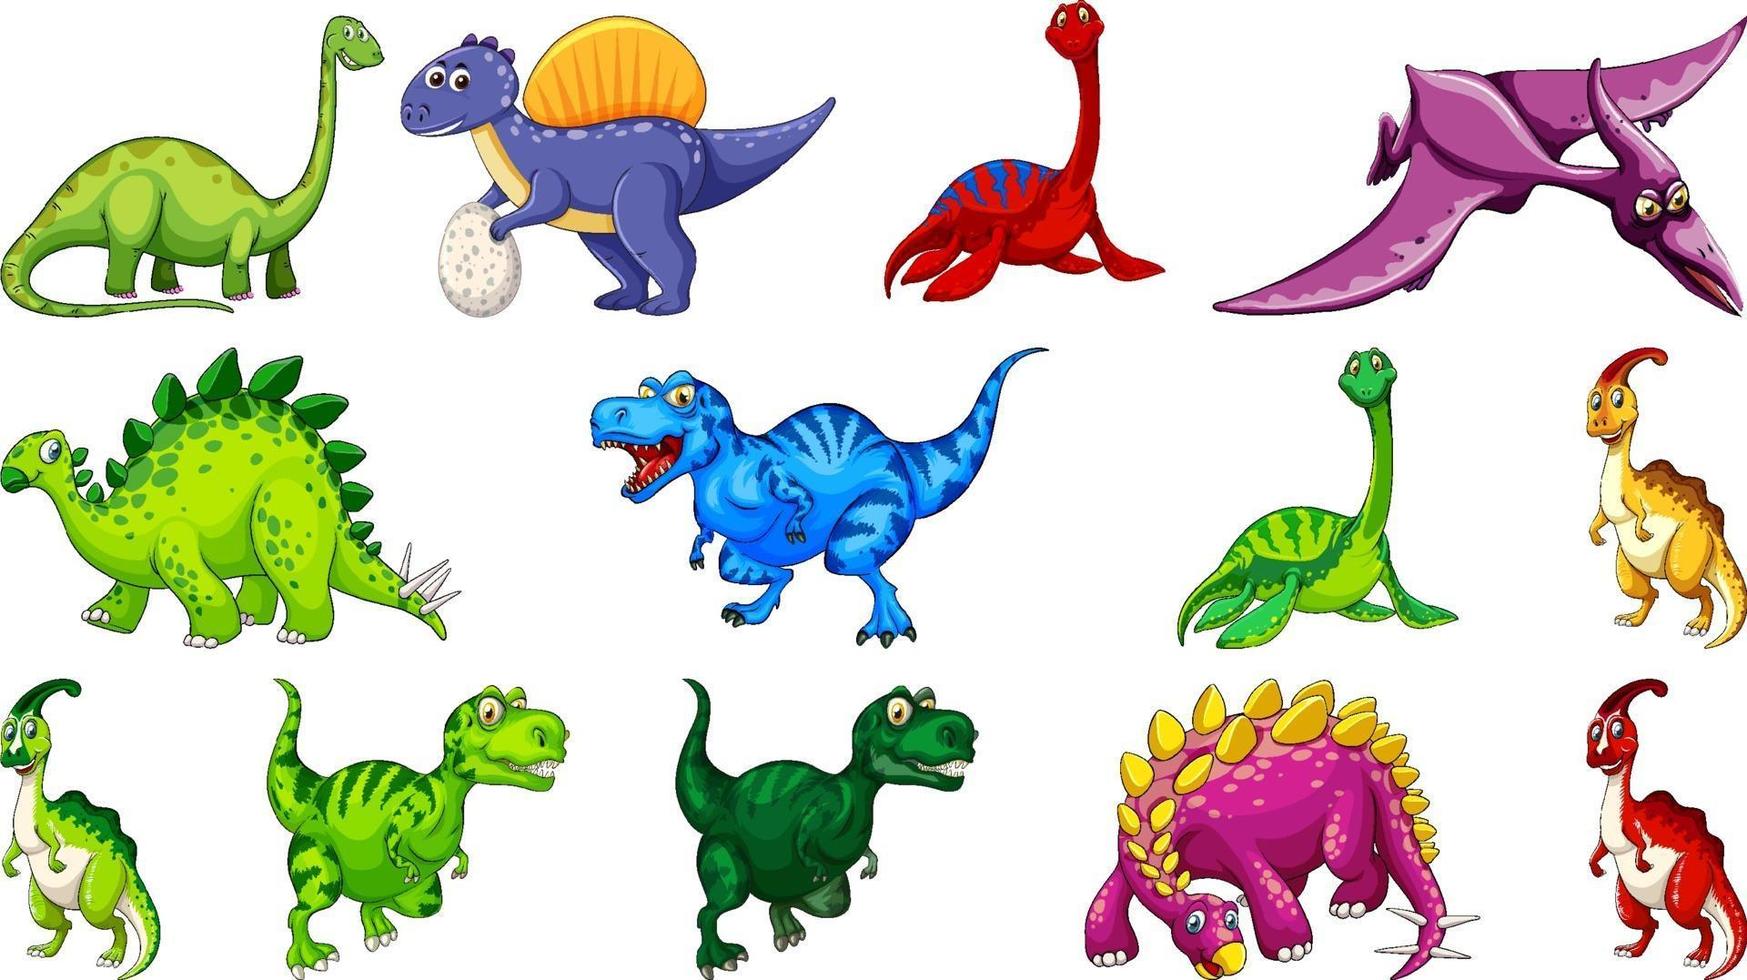 diversi personaggi dei cartoni animati di dinosauri e draghi fantasy isolati vettore